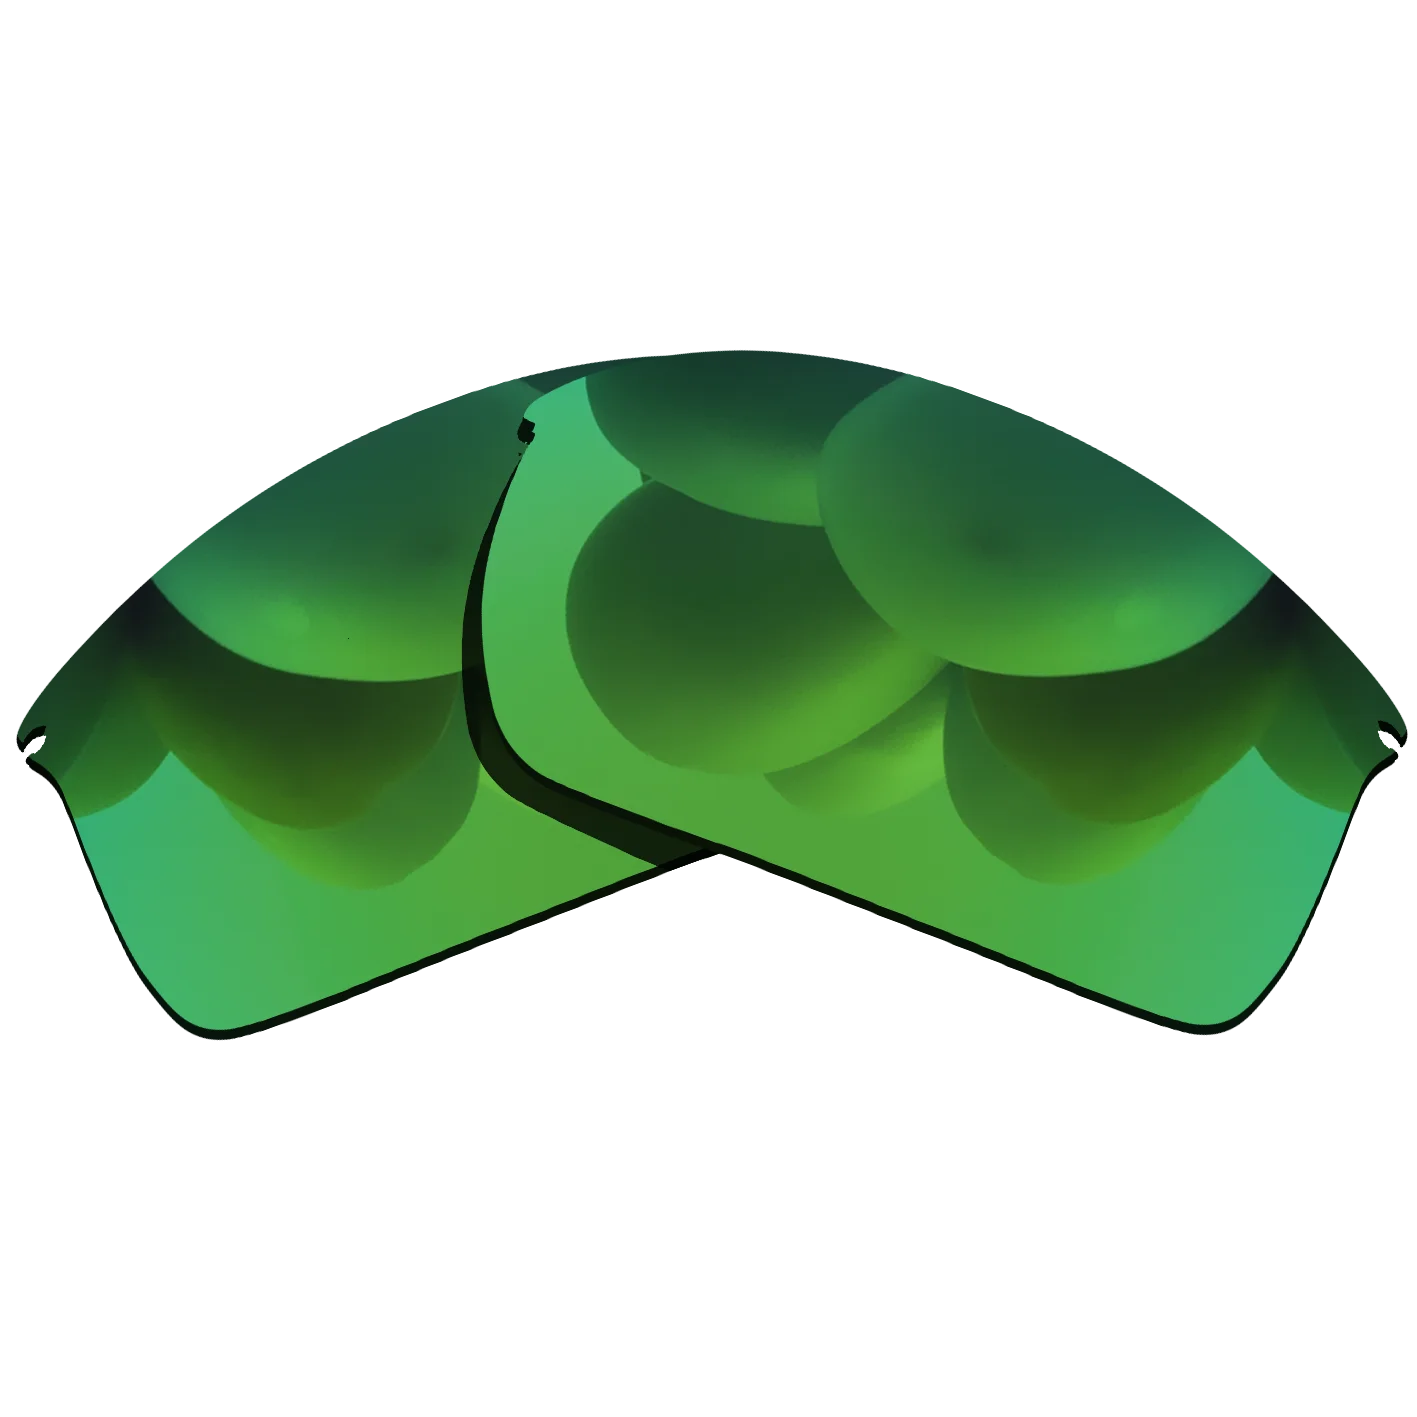 

Изумрудно-зеленые поляризованные солнцезащитные очки Сменные линзы для-Oakley проволочная оправа 100% УФ-защита хороший фитнес